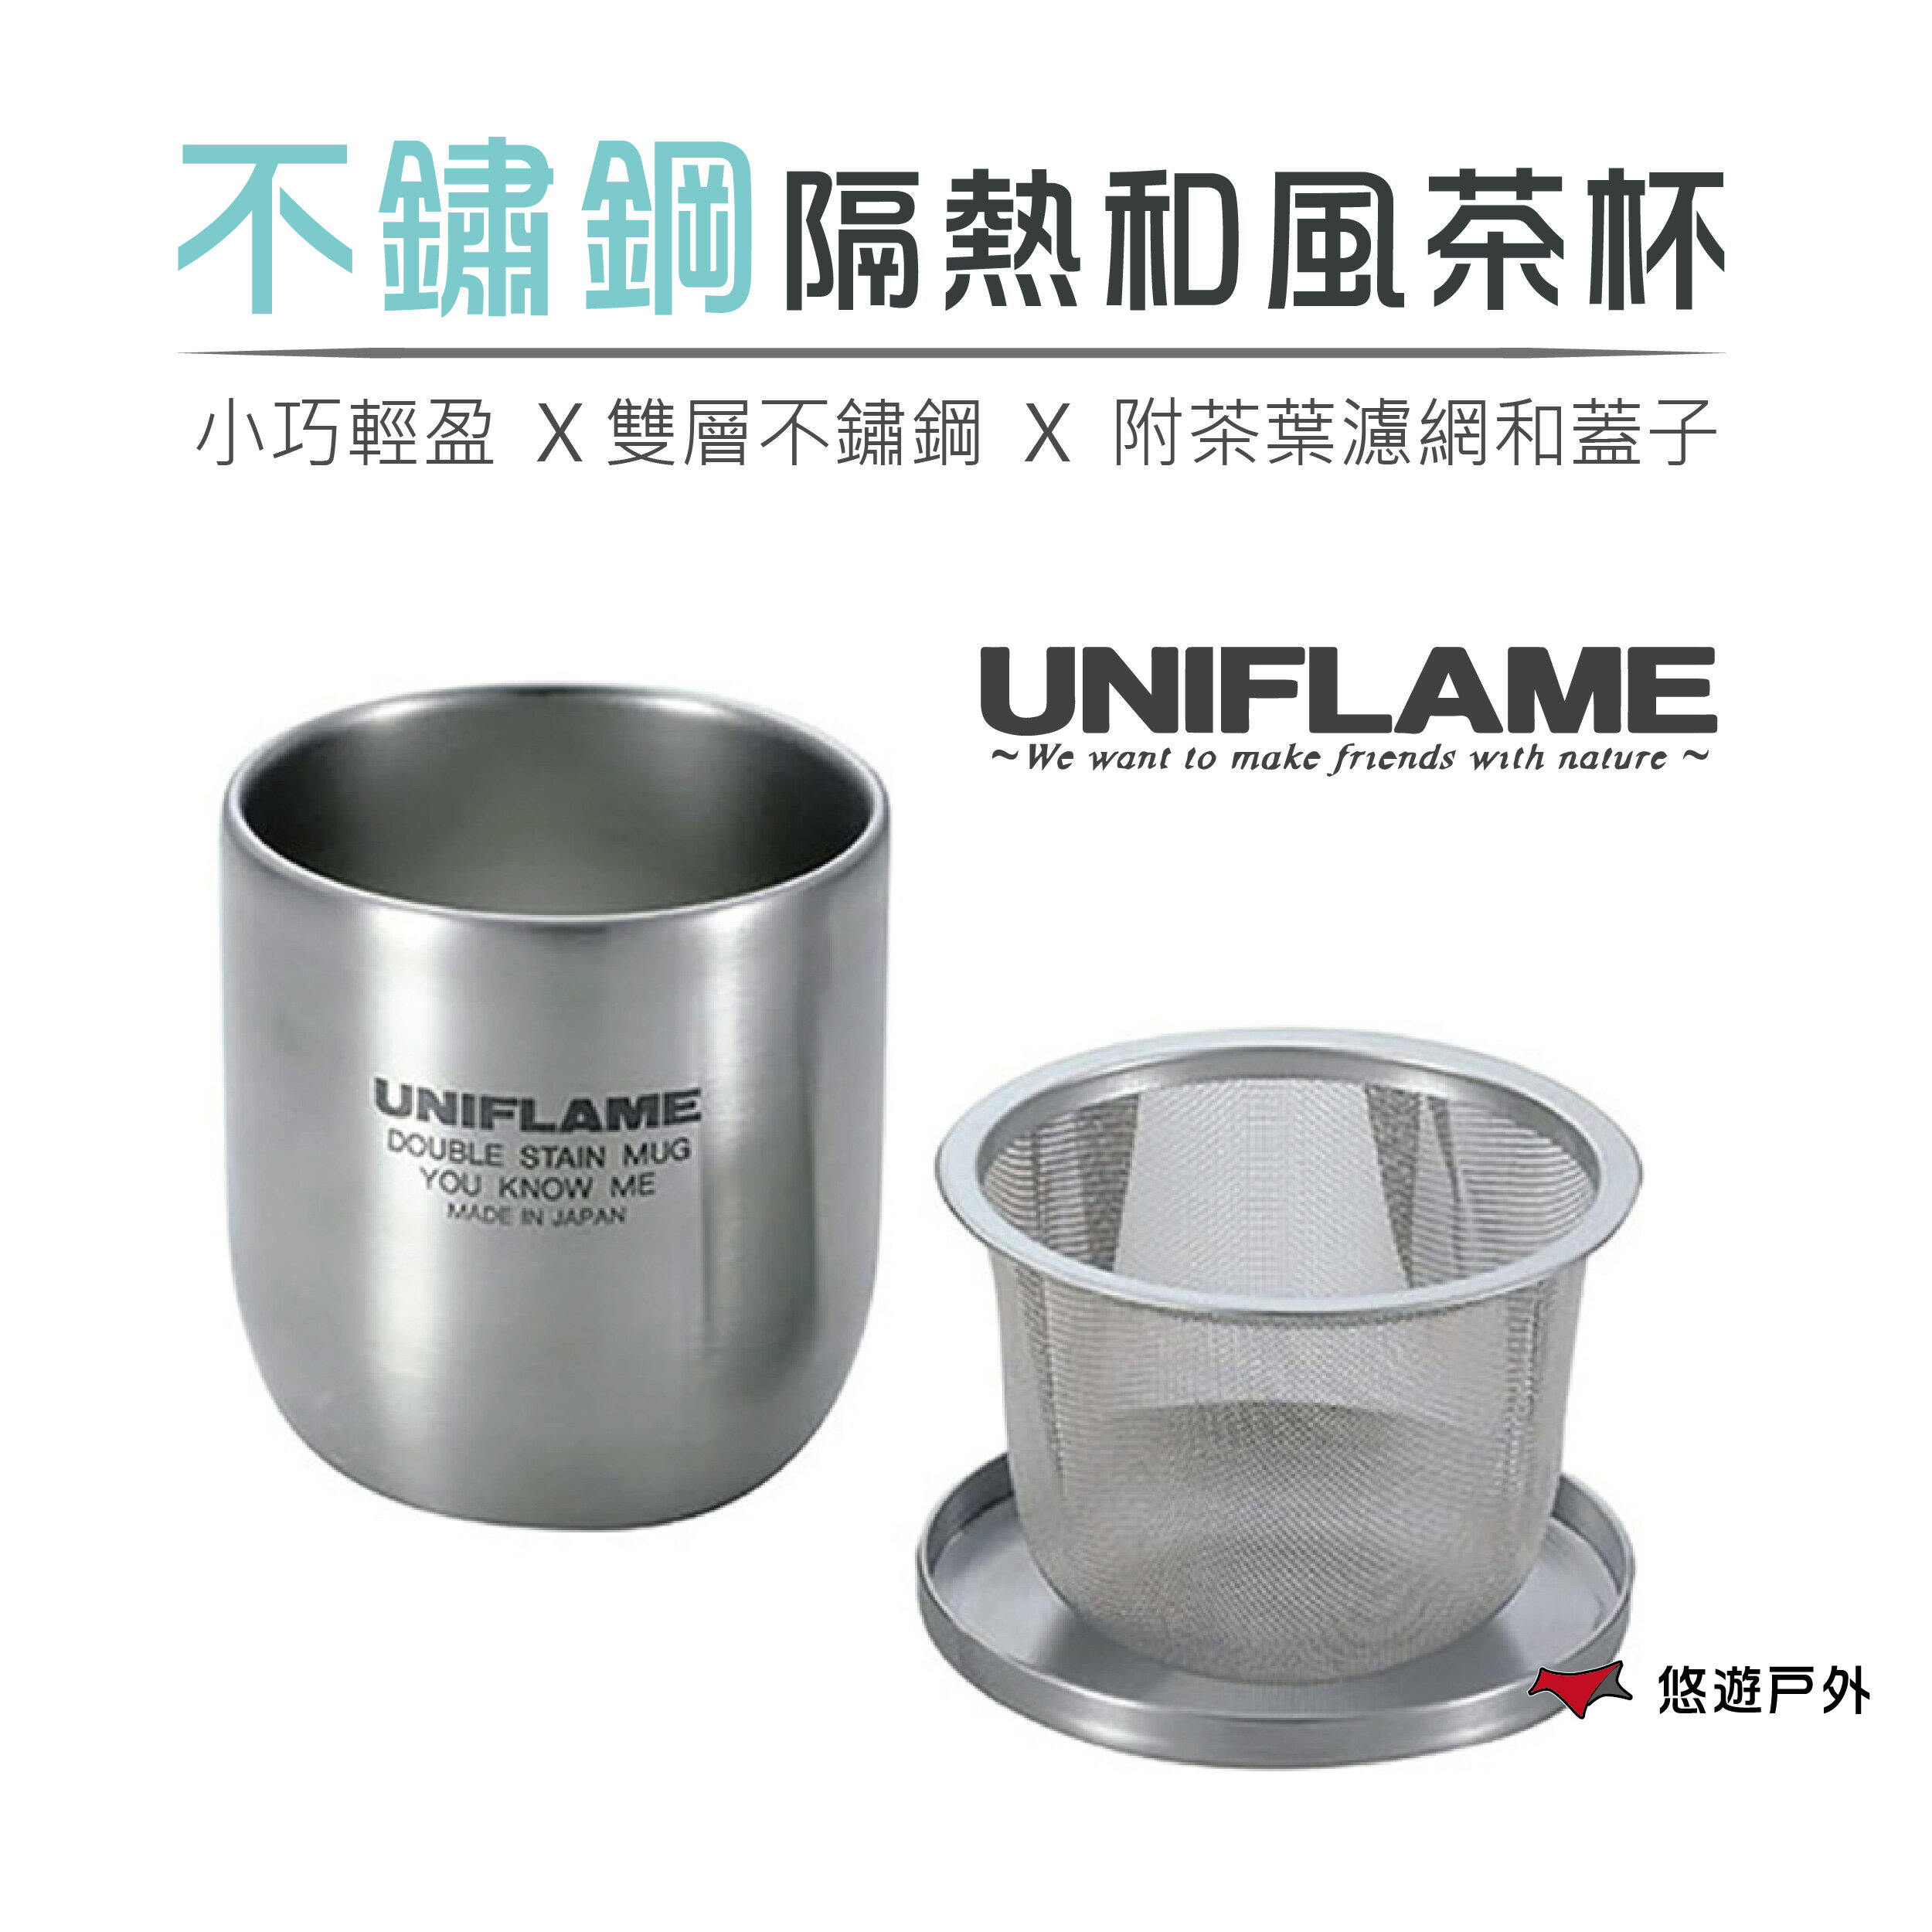 【UNIFLAME】U666081 不鏽鋼隔熱和風茶杯 (含濾茶器.蓋子.收納袋) 茶杯組 露營杯 泡茶杯